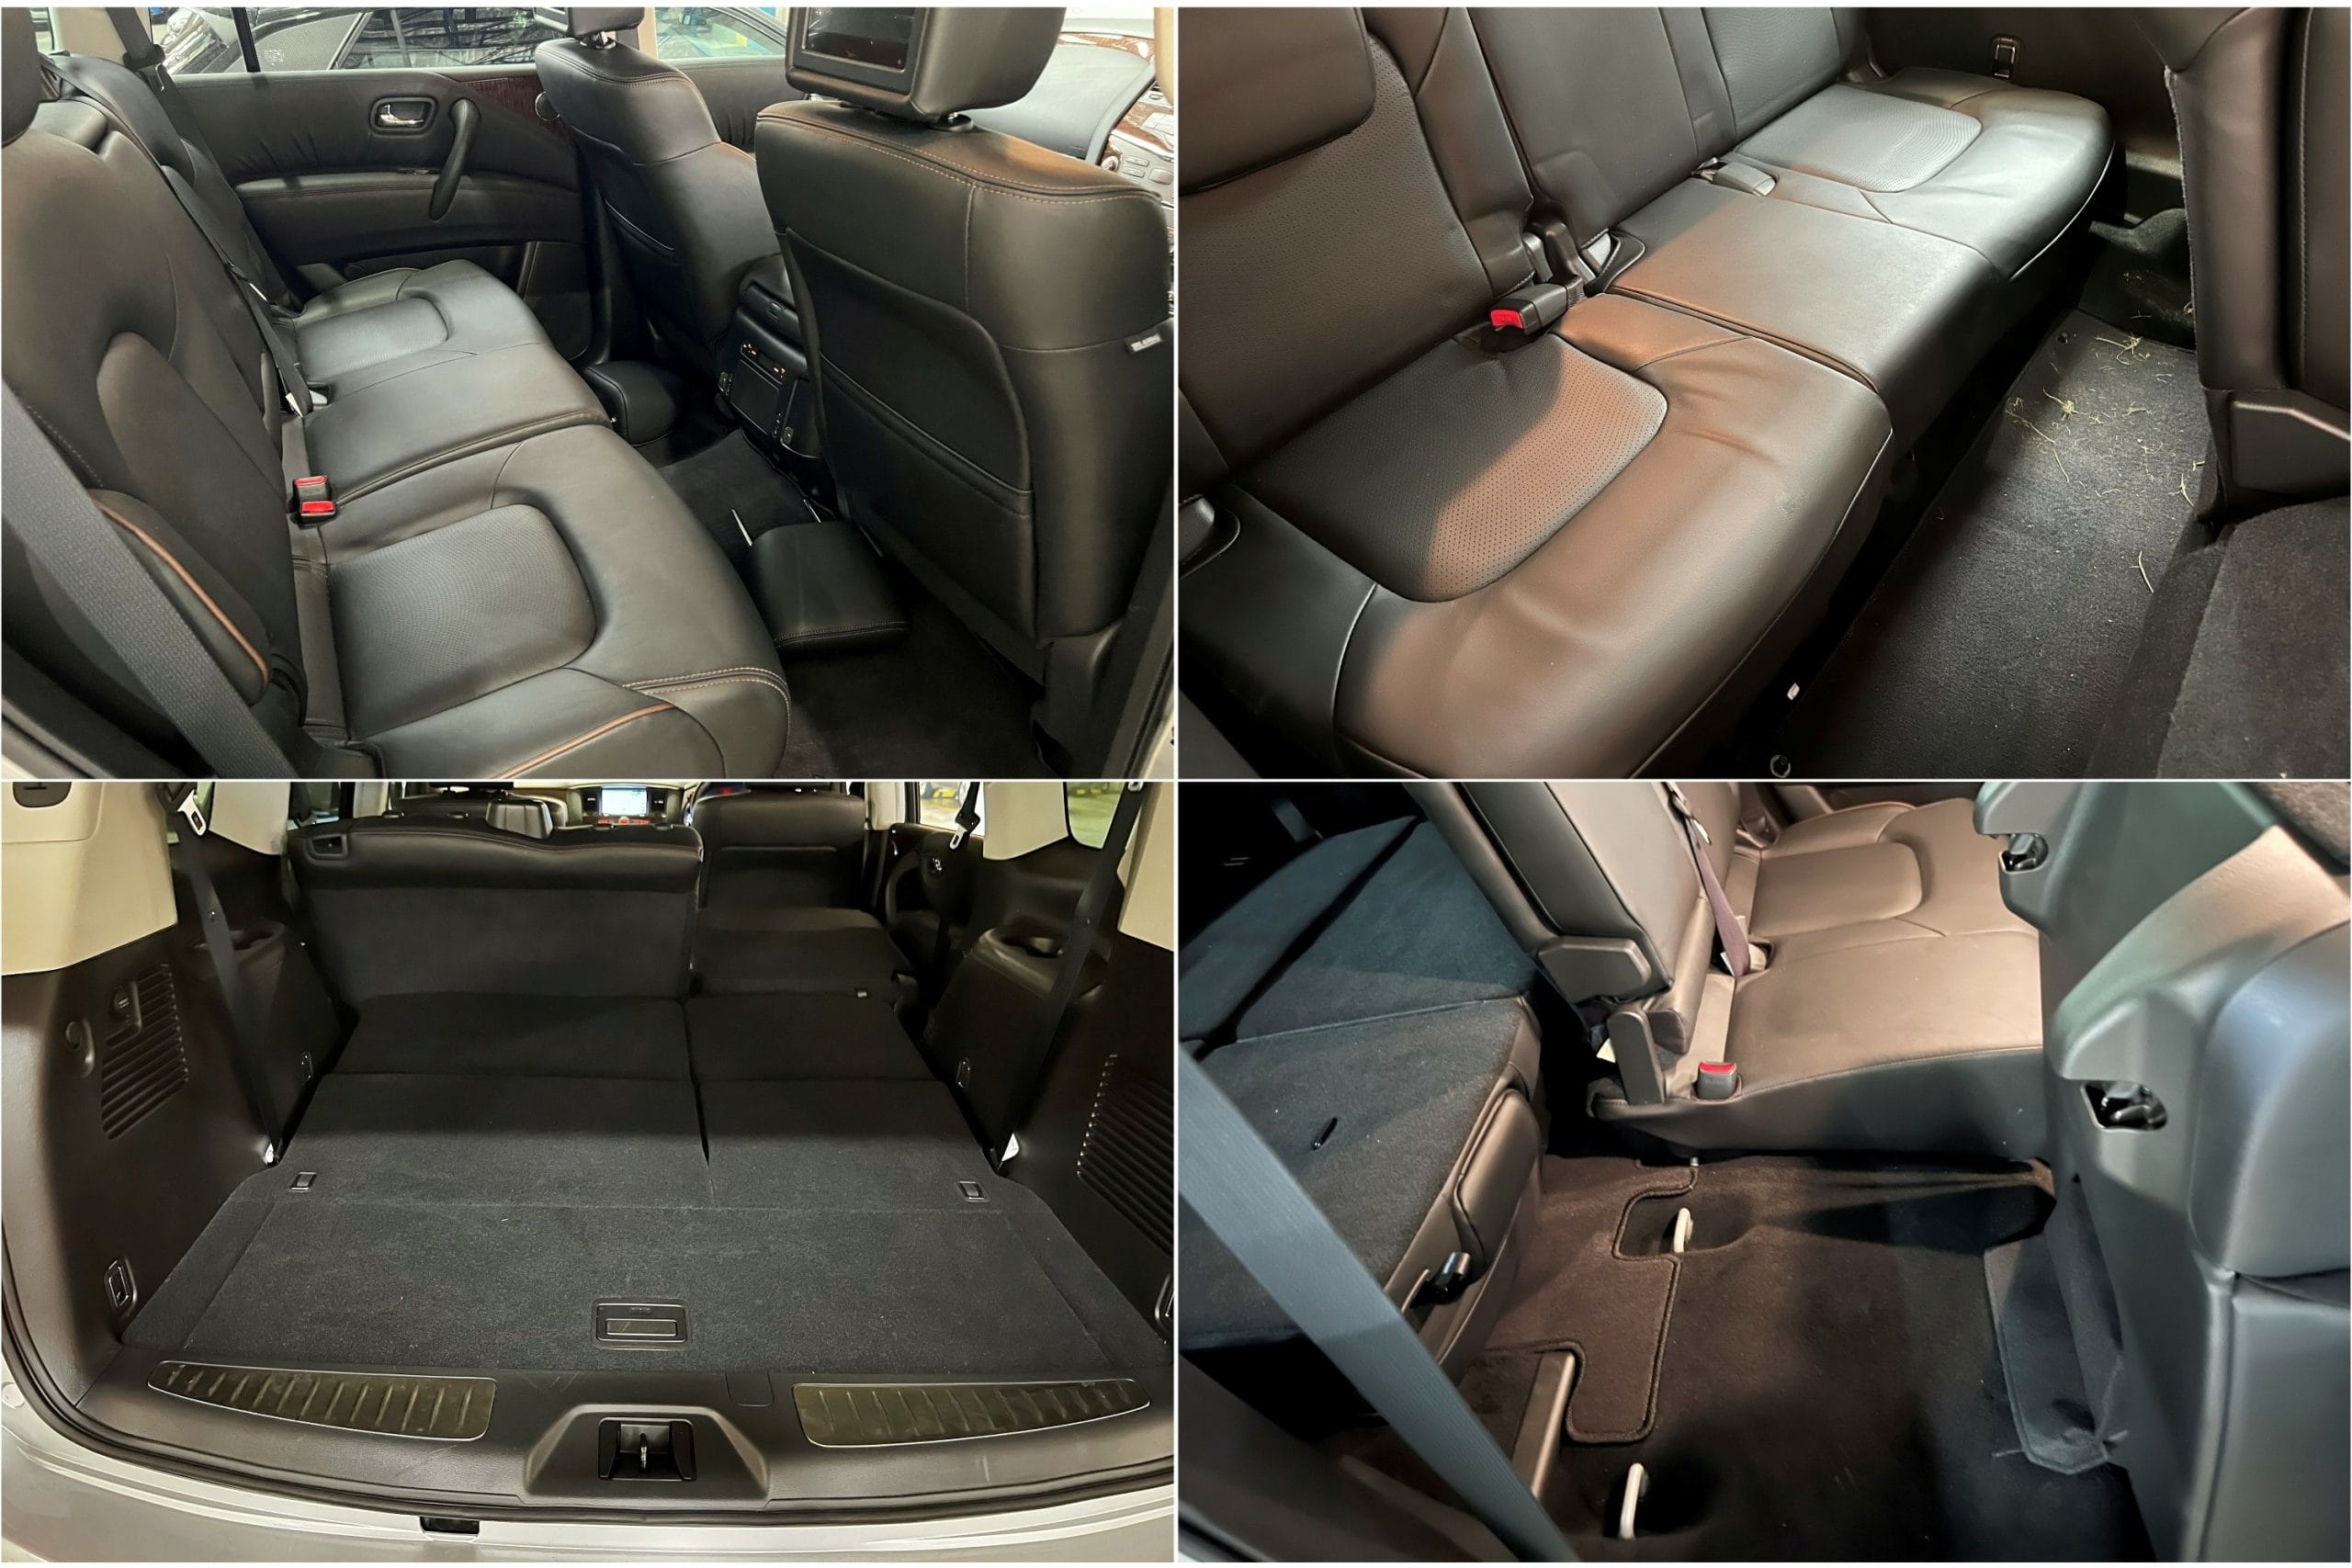 2022 Nissan Patrol Ti-L rear seats 4 pic